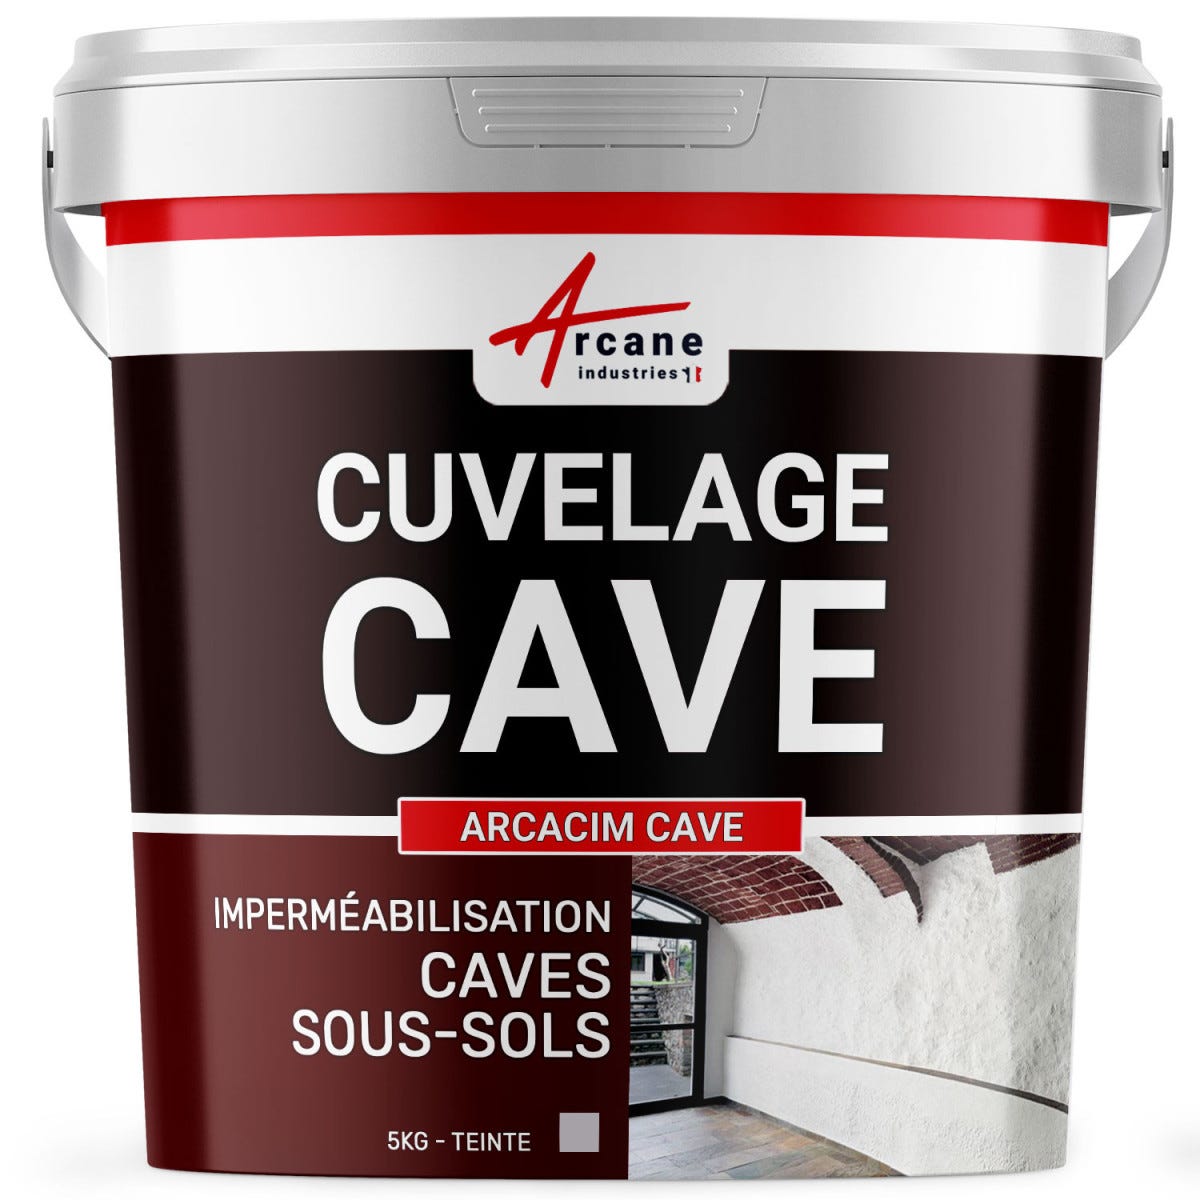 Enduit de cuvelage hydrofuge - Étanchéité cave sous-sol garage - ARCACIM CAVE - 5 kg - Gris - ARCANE INDUSTRIES 0